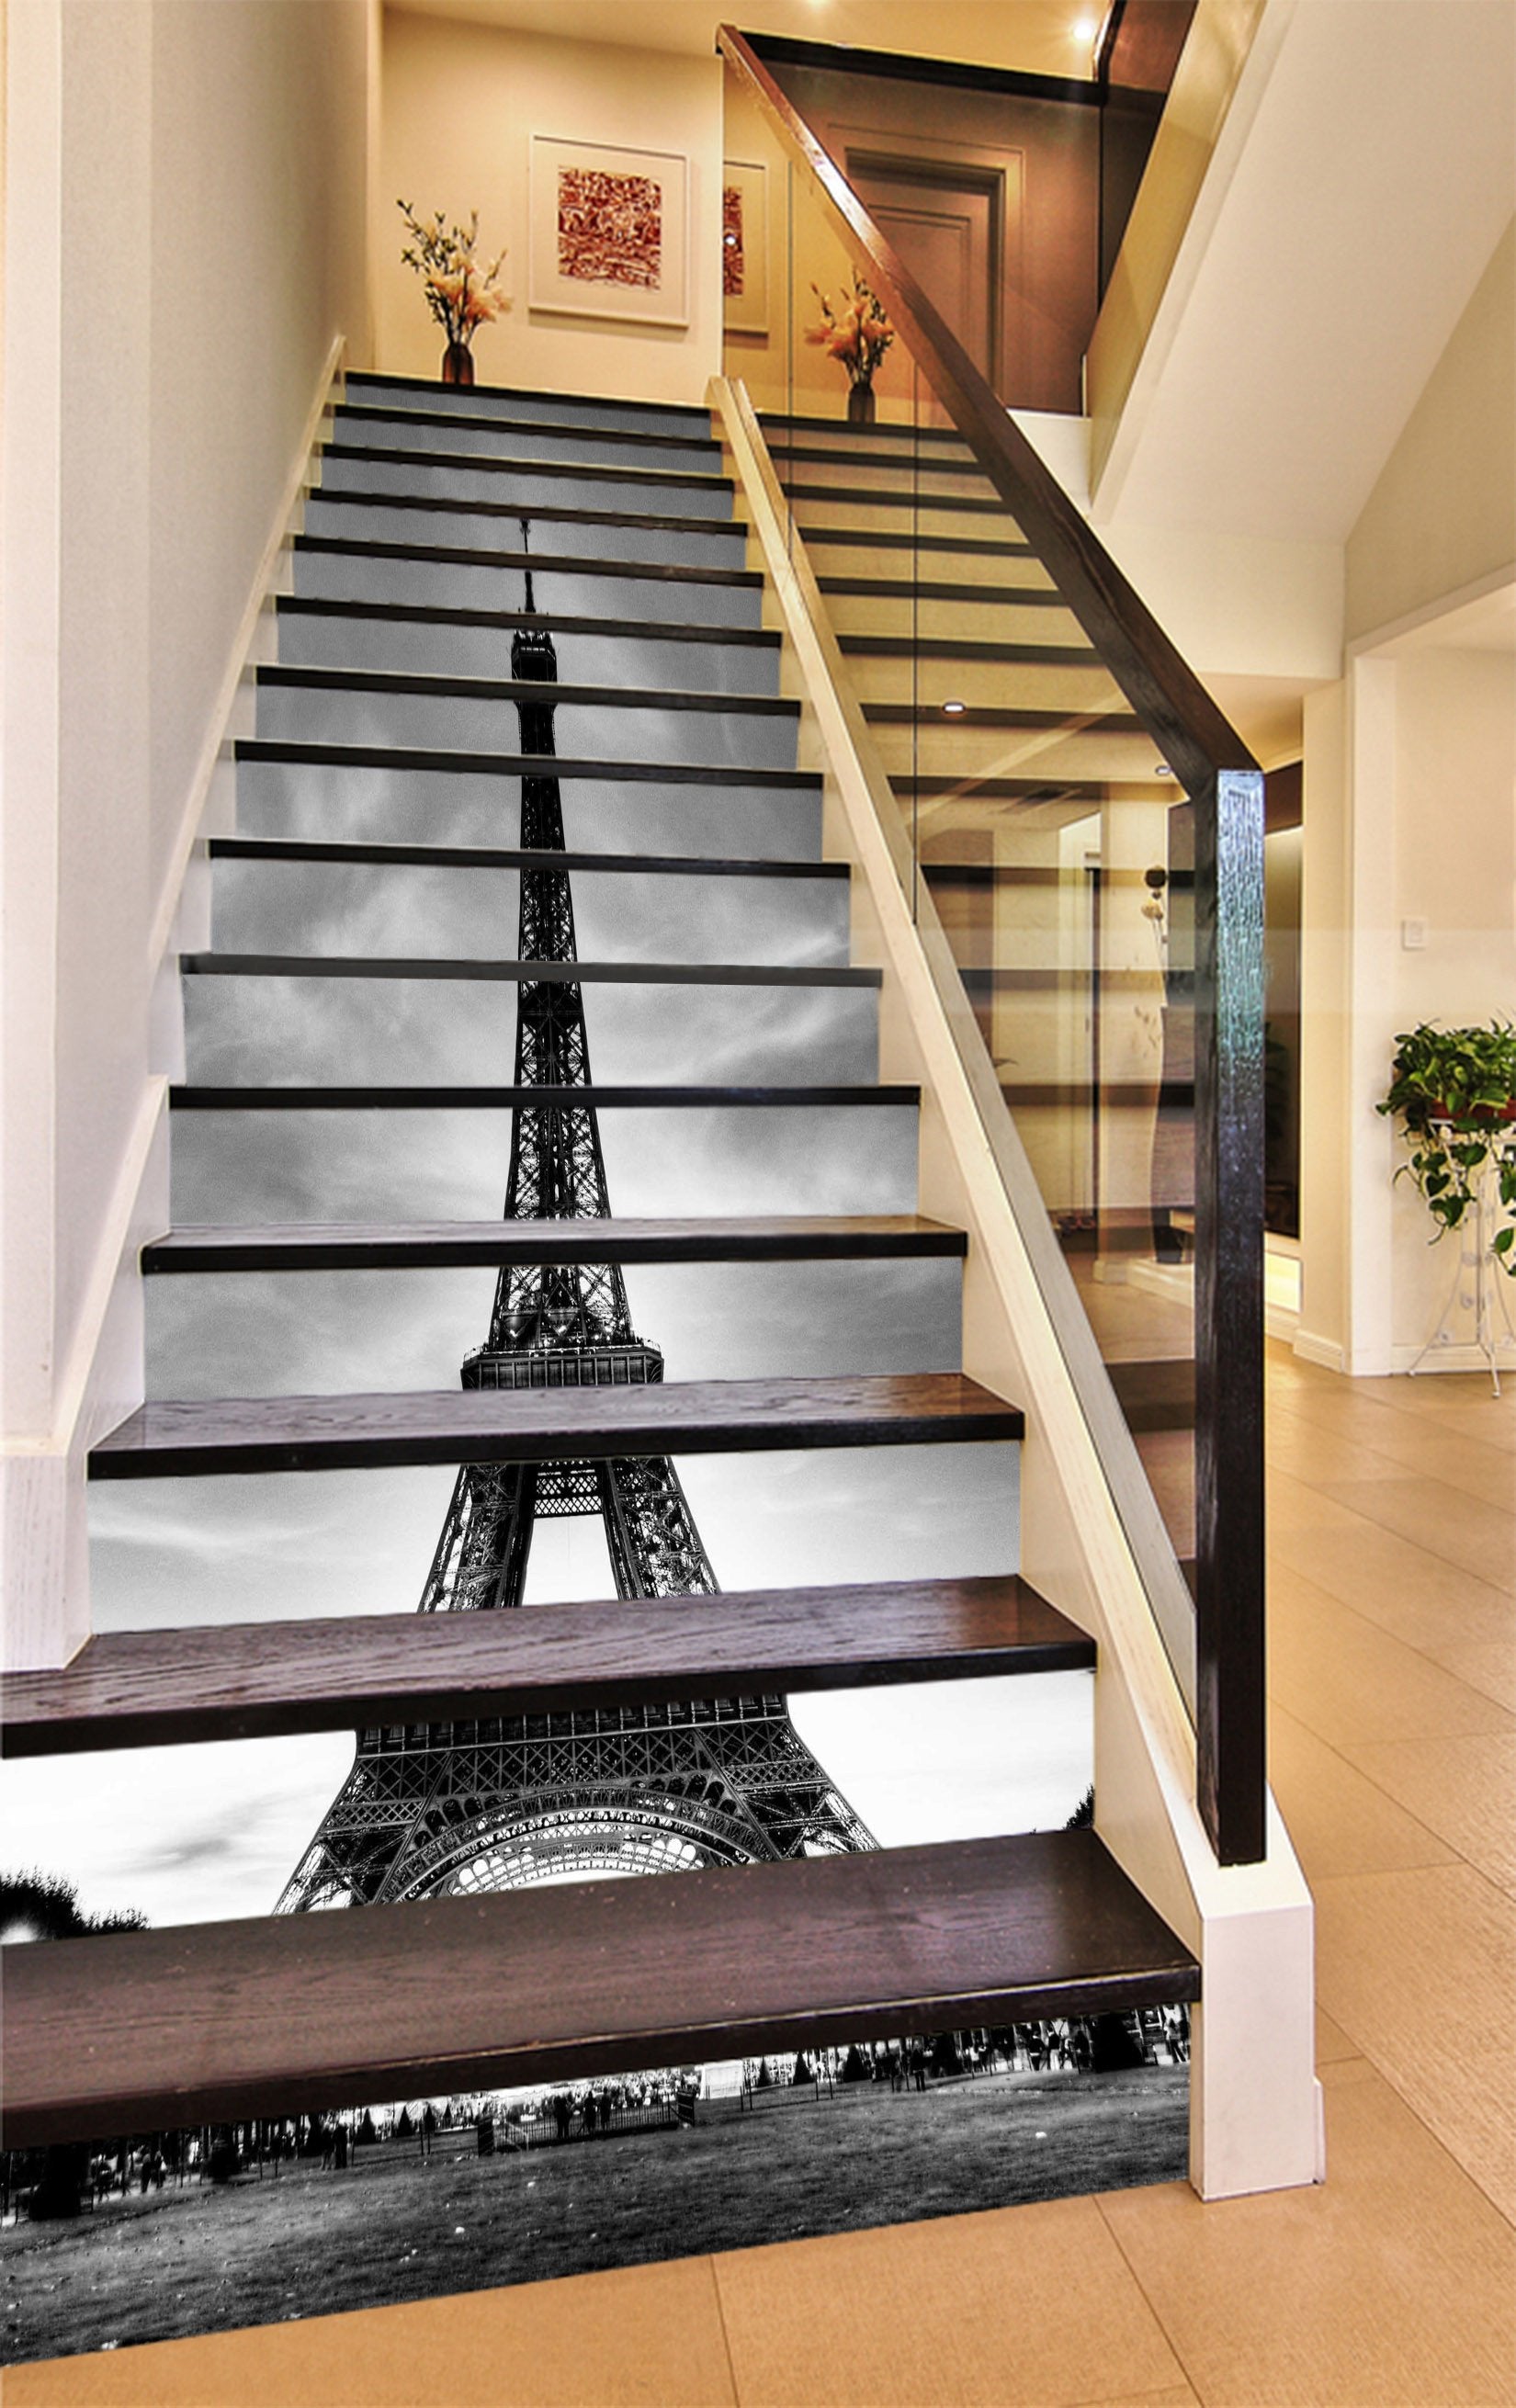 3D Paris Eiffel Tower 1044 Stair Risers Wallpaper AJ Wallpaper 